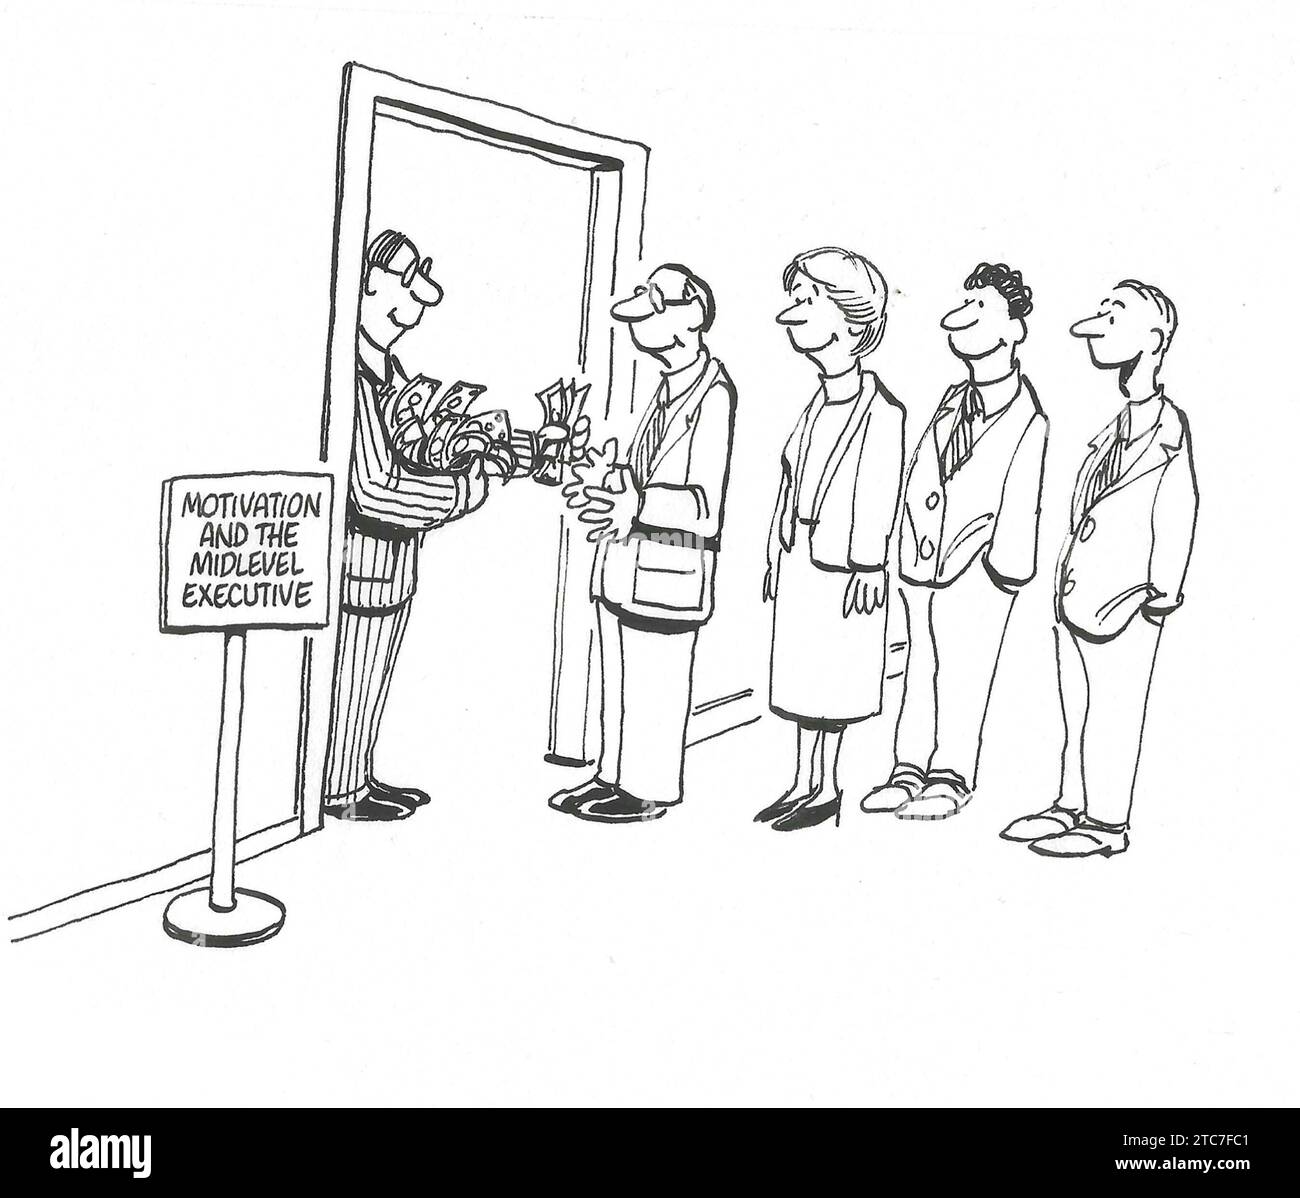 BW-Cartoon-Illustration, in der ein männlicher Chef Bargeld an leitende Mitarbeiter verteilt, „Motivation and the Mid-Level Executive“. Stockfoto